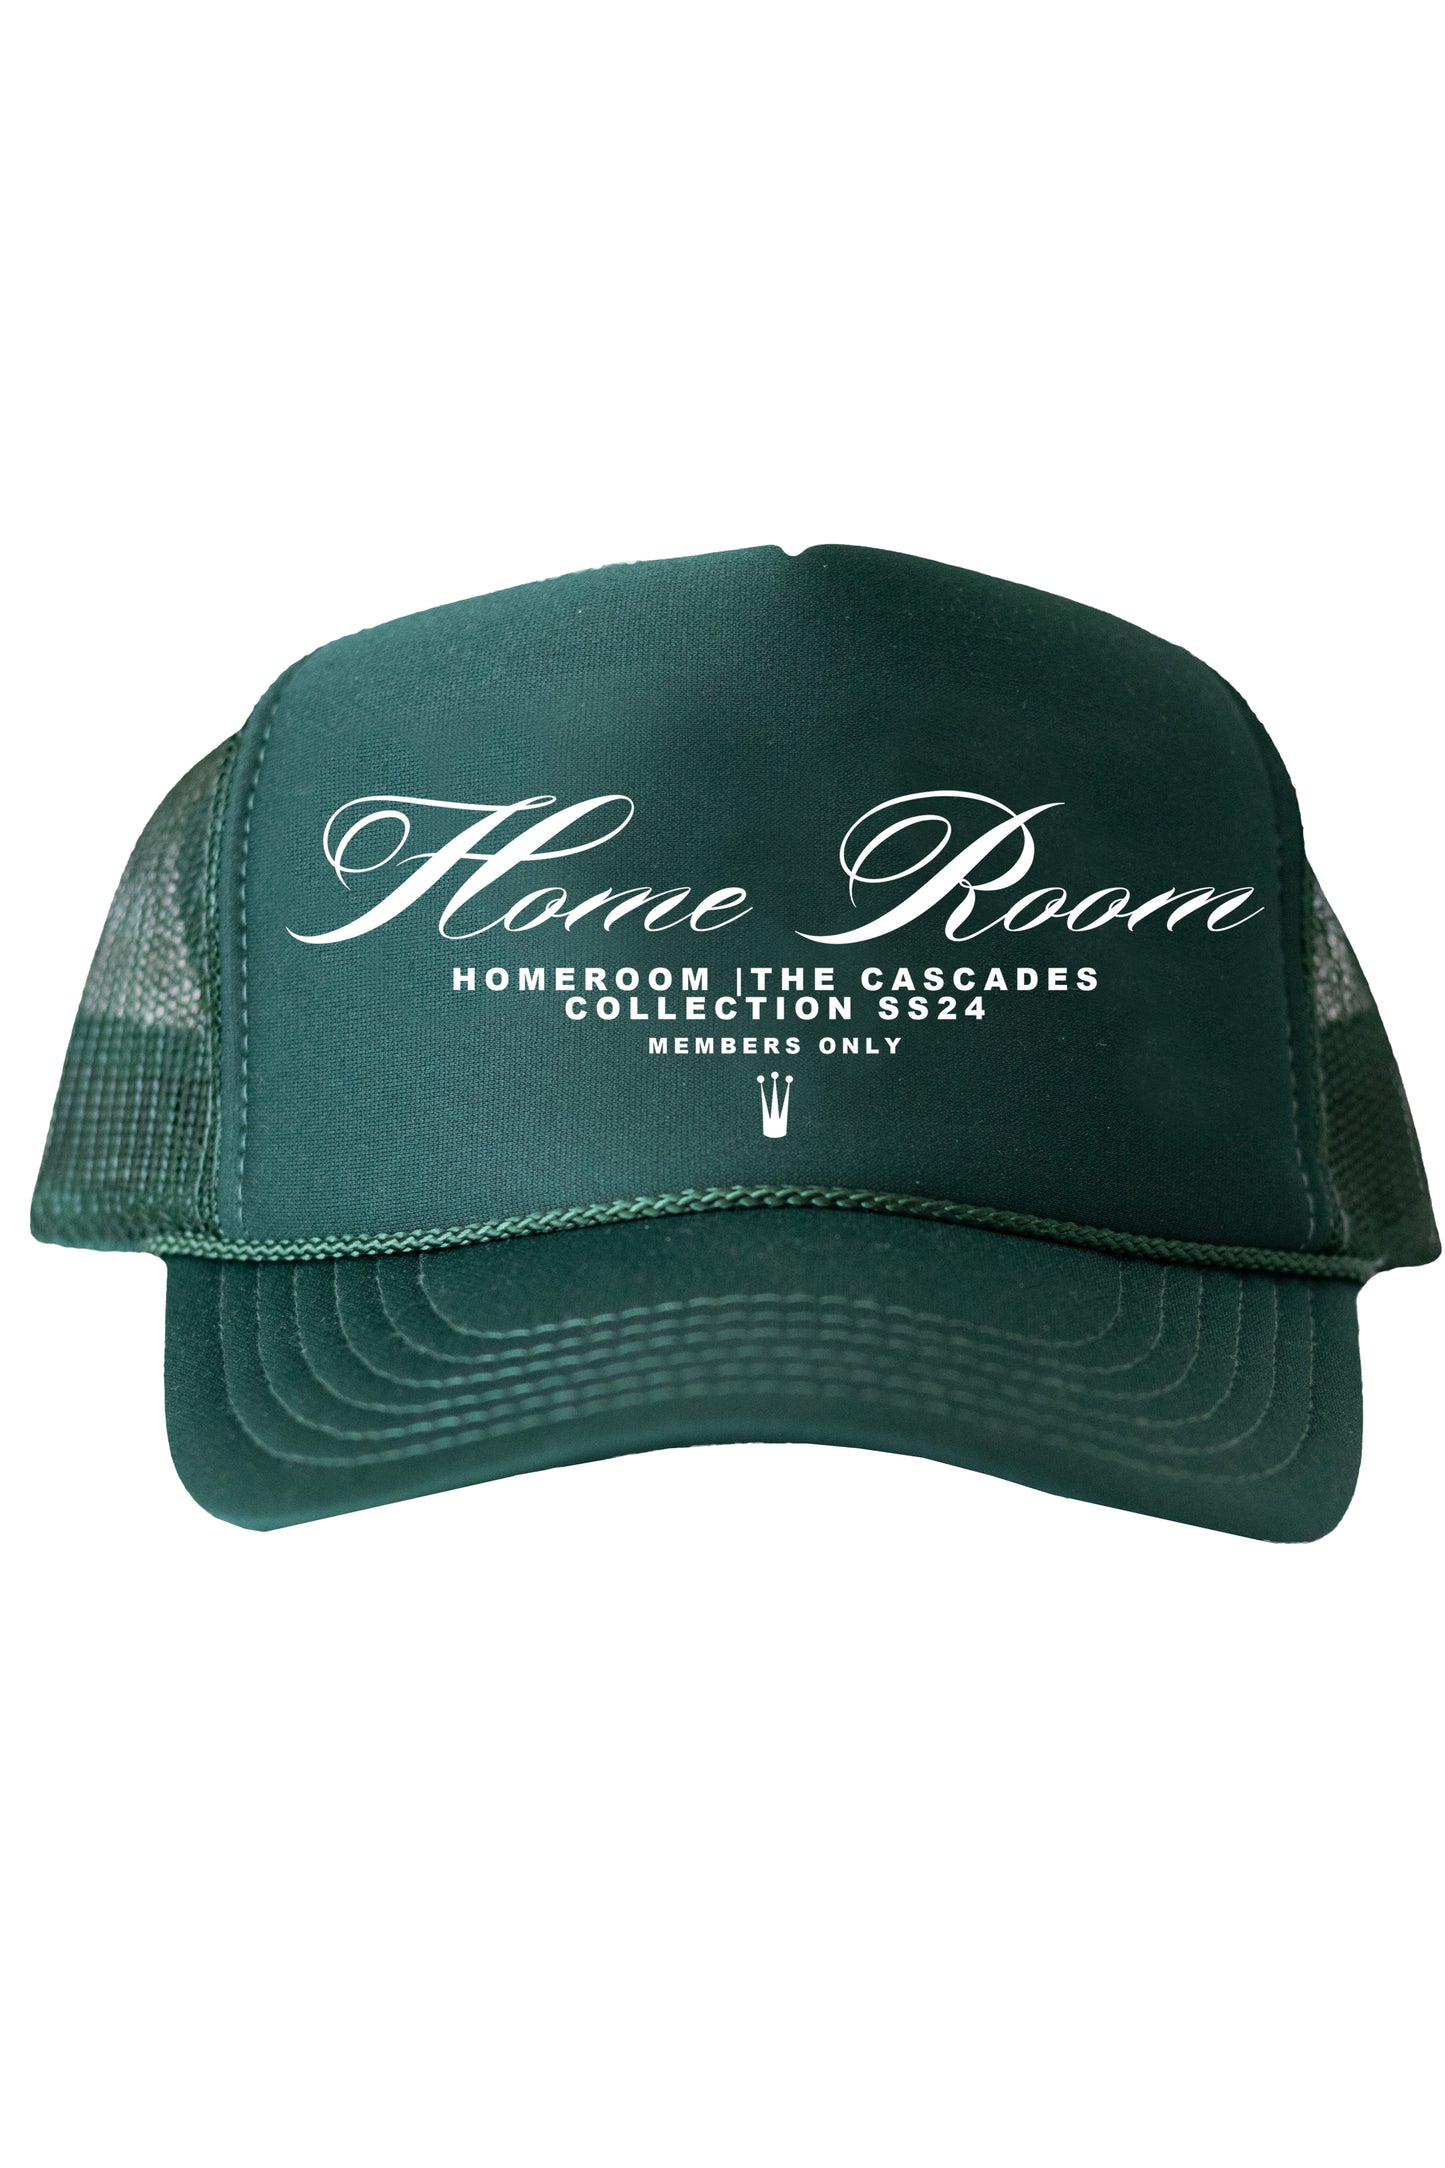 HOMEROOM-"MEMBERS ONLY" Script (Green Trucker Hat)